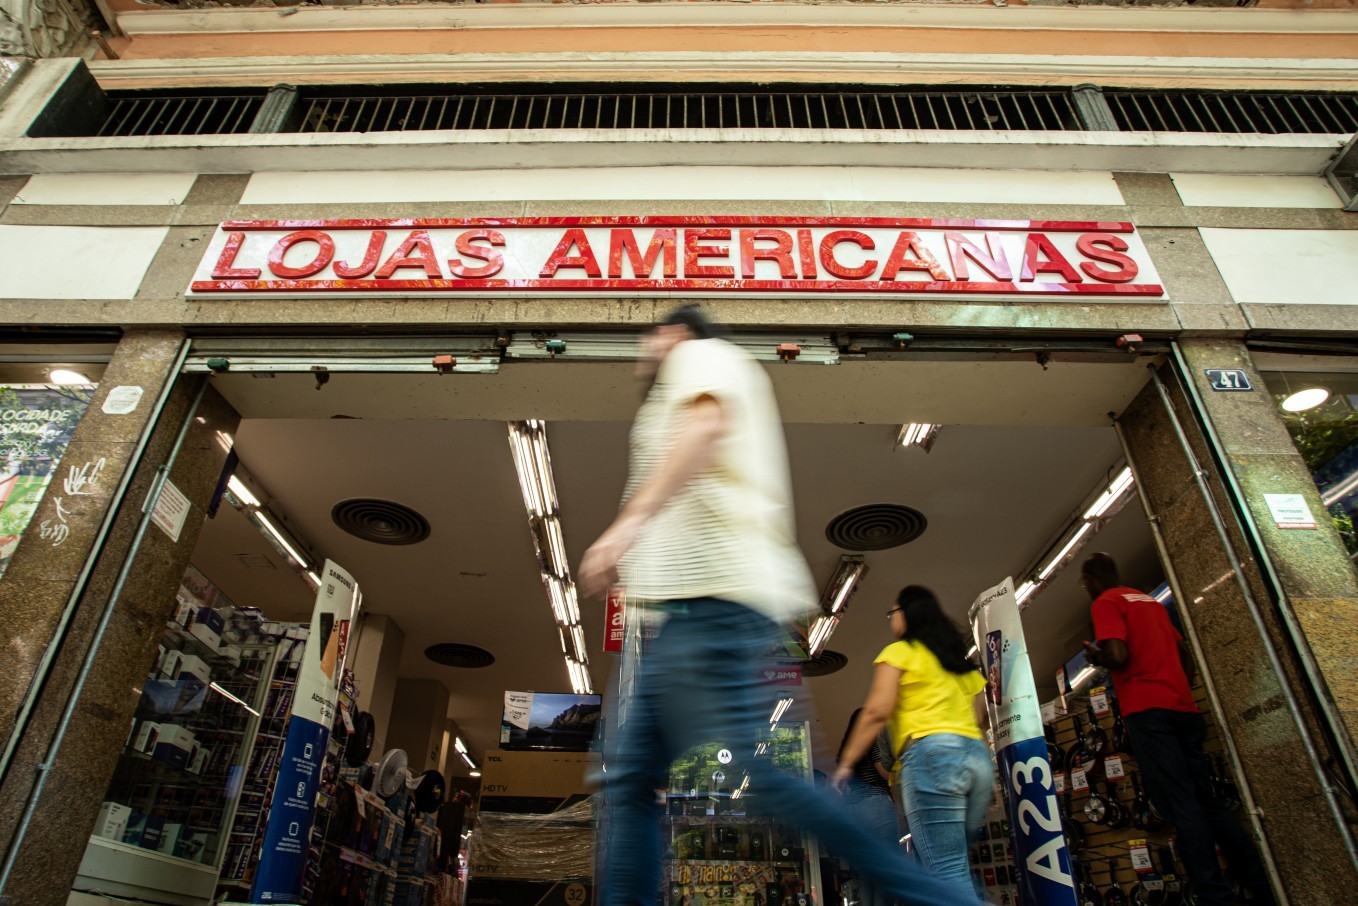 Lojas Americanas se encontra em meio a uma crise com rombo de 20 bilhões de reais  — Foto: Hermes de Paula